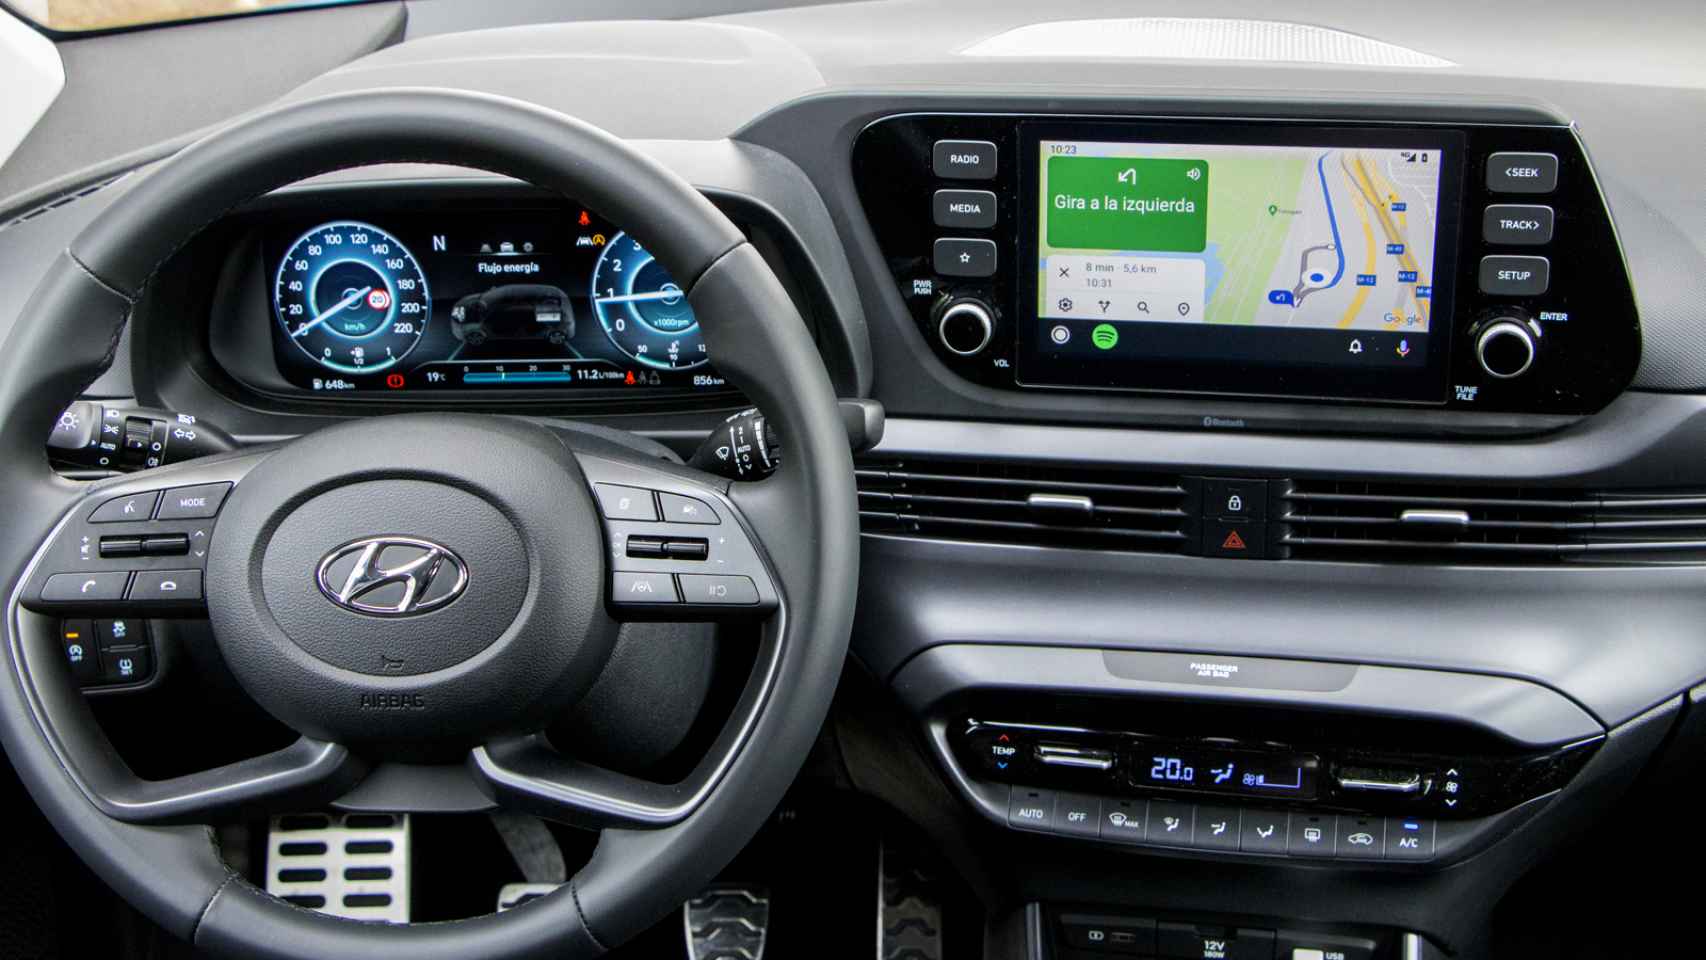 Hyundai Bayón: todas las fotos del nuevo SUV urbano